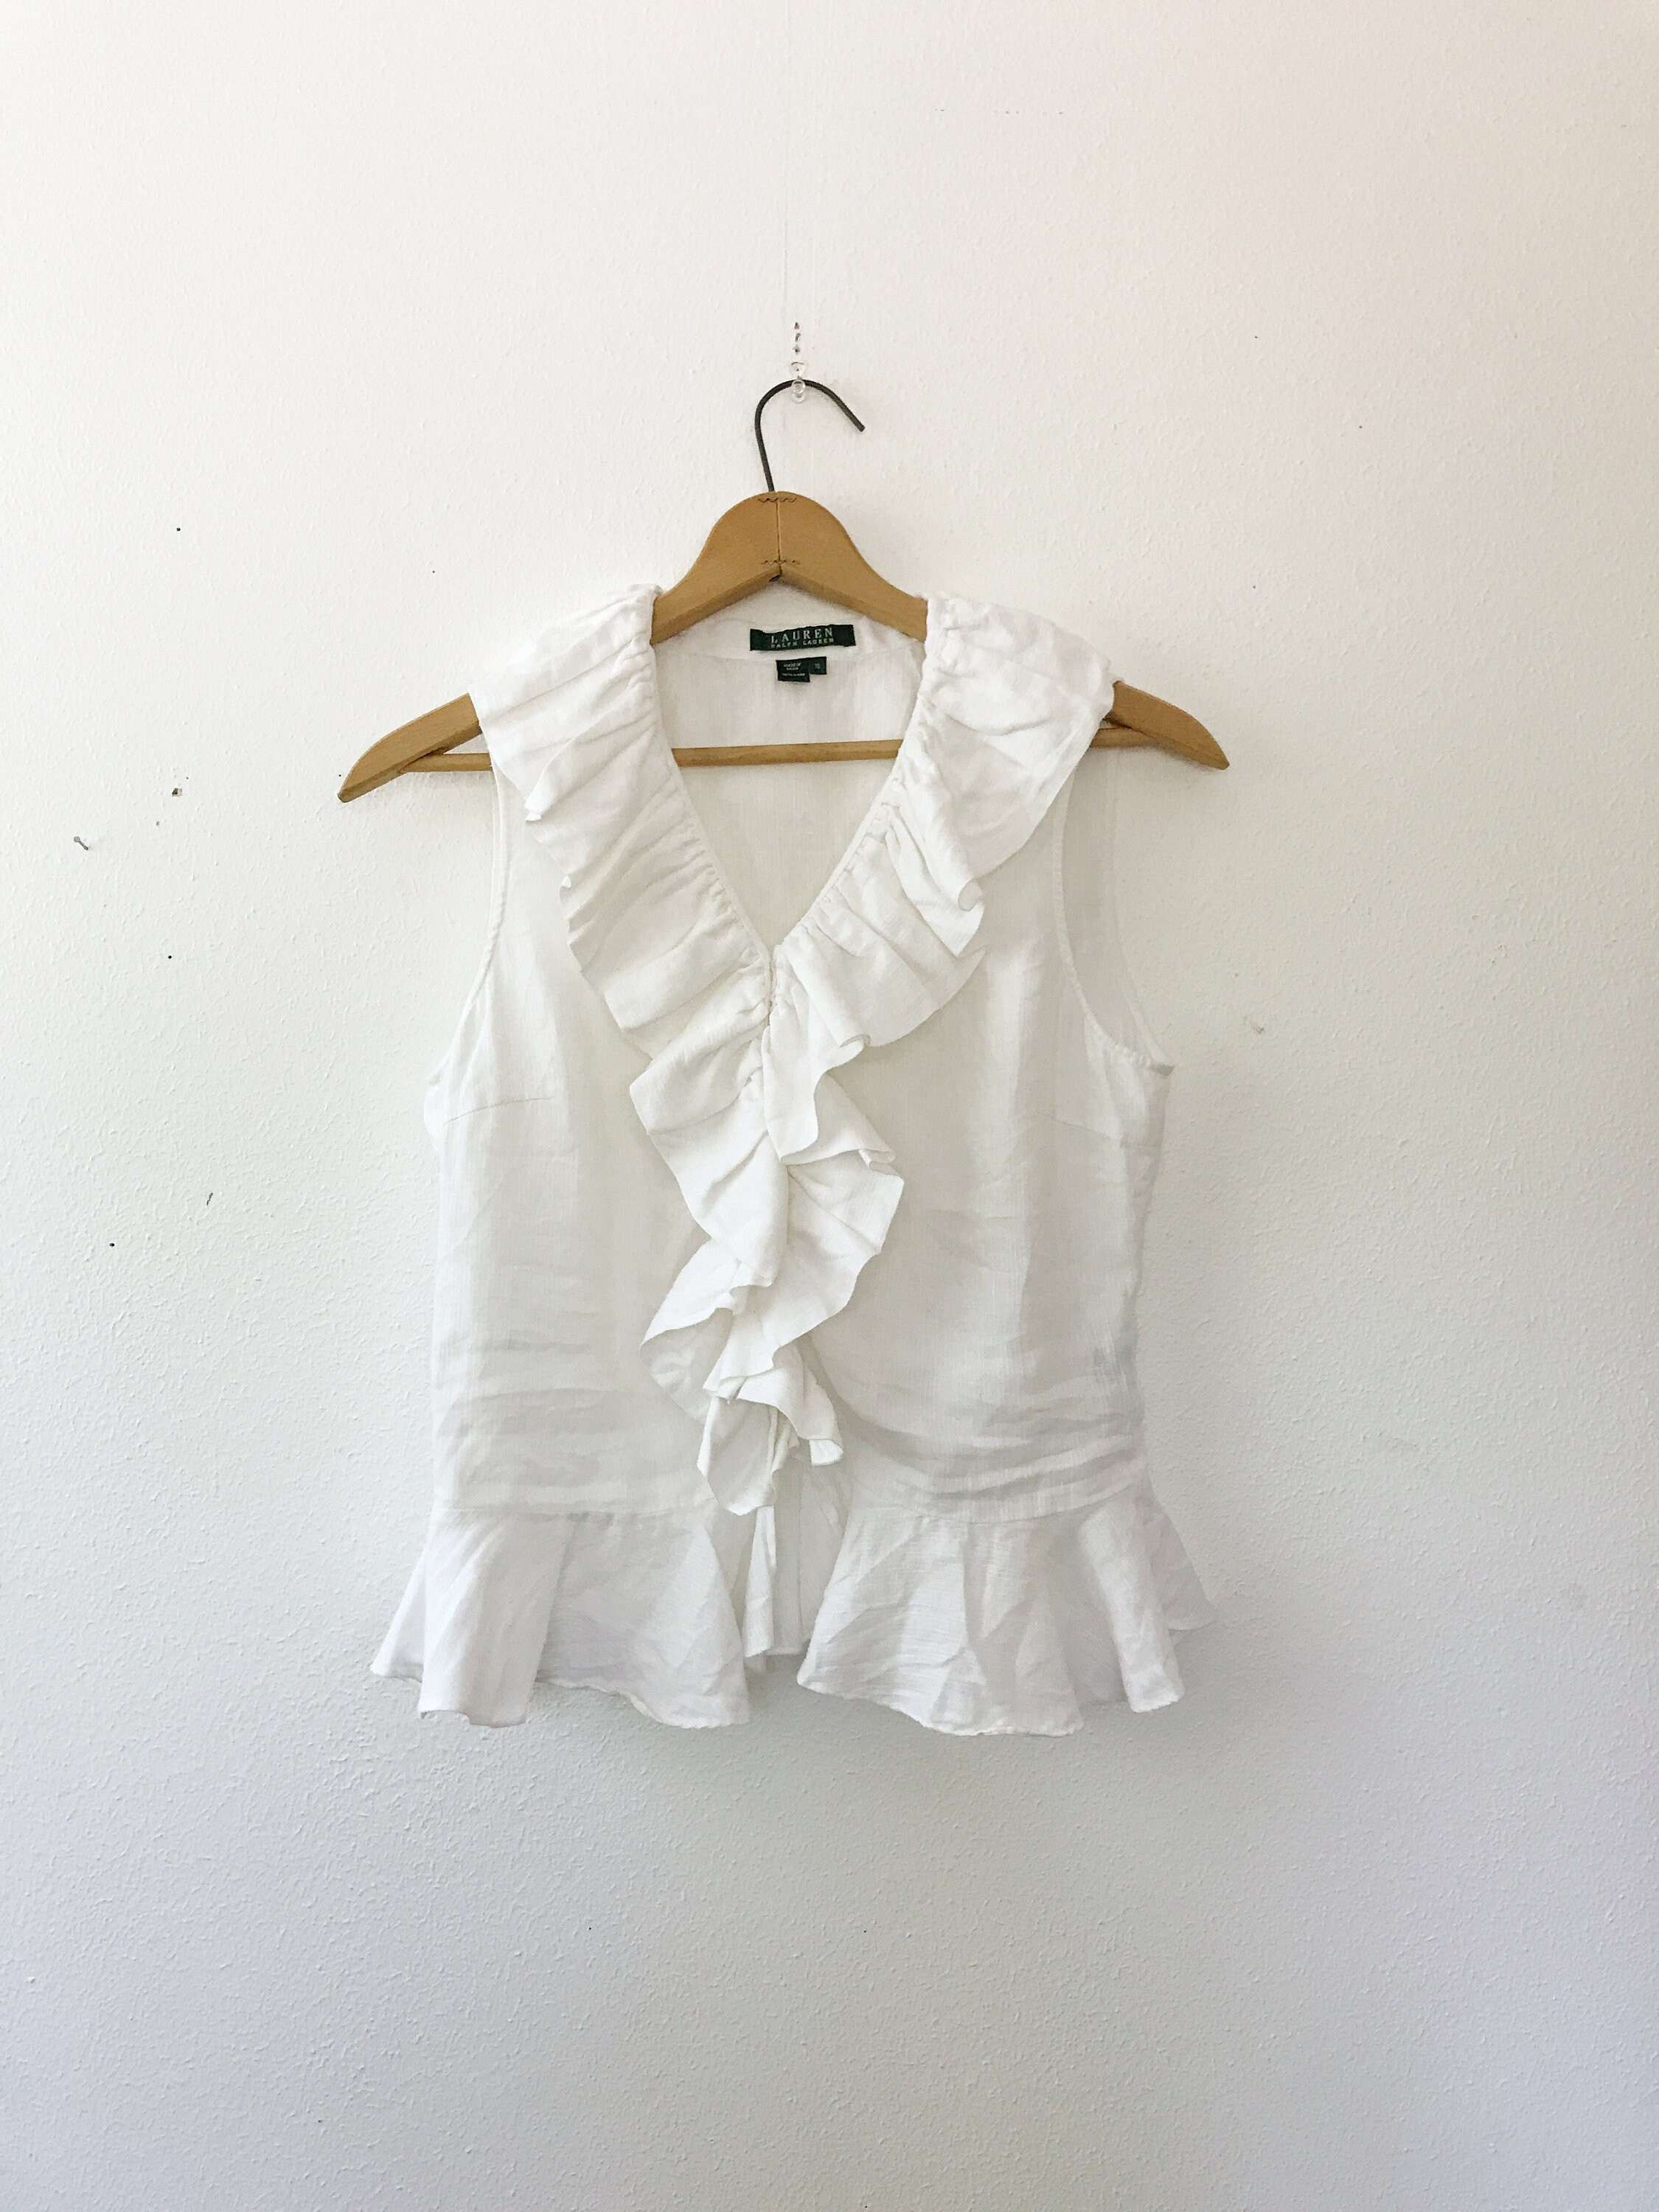 ruffled blouse / white linen blouse / Ralph Lauren blouse